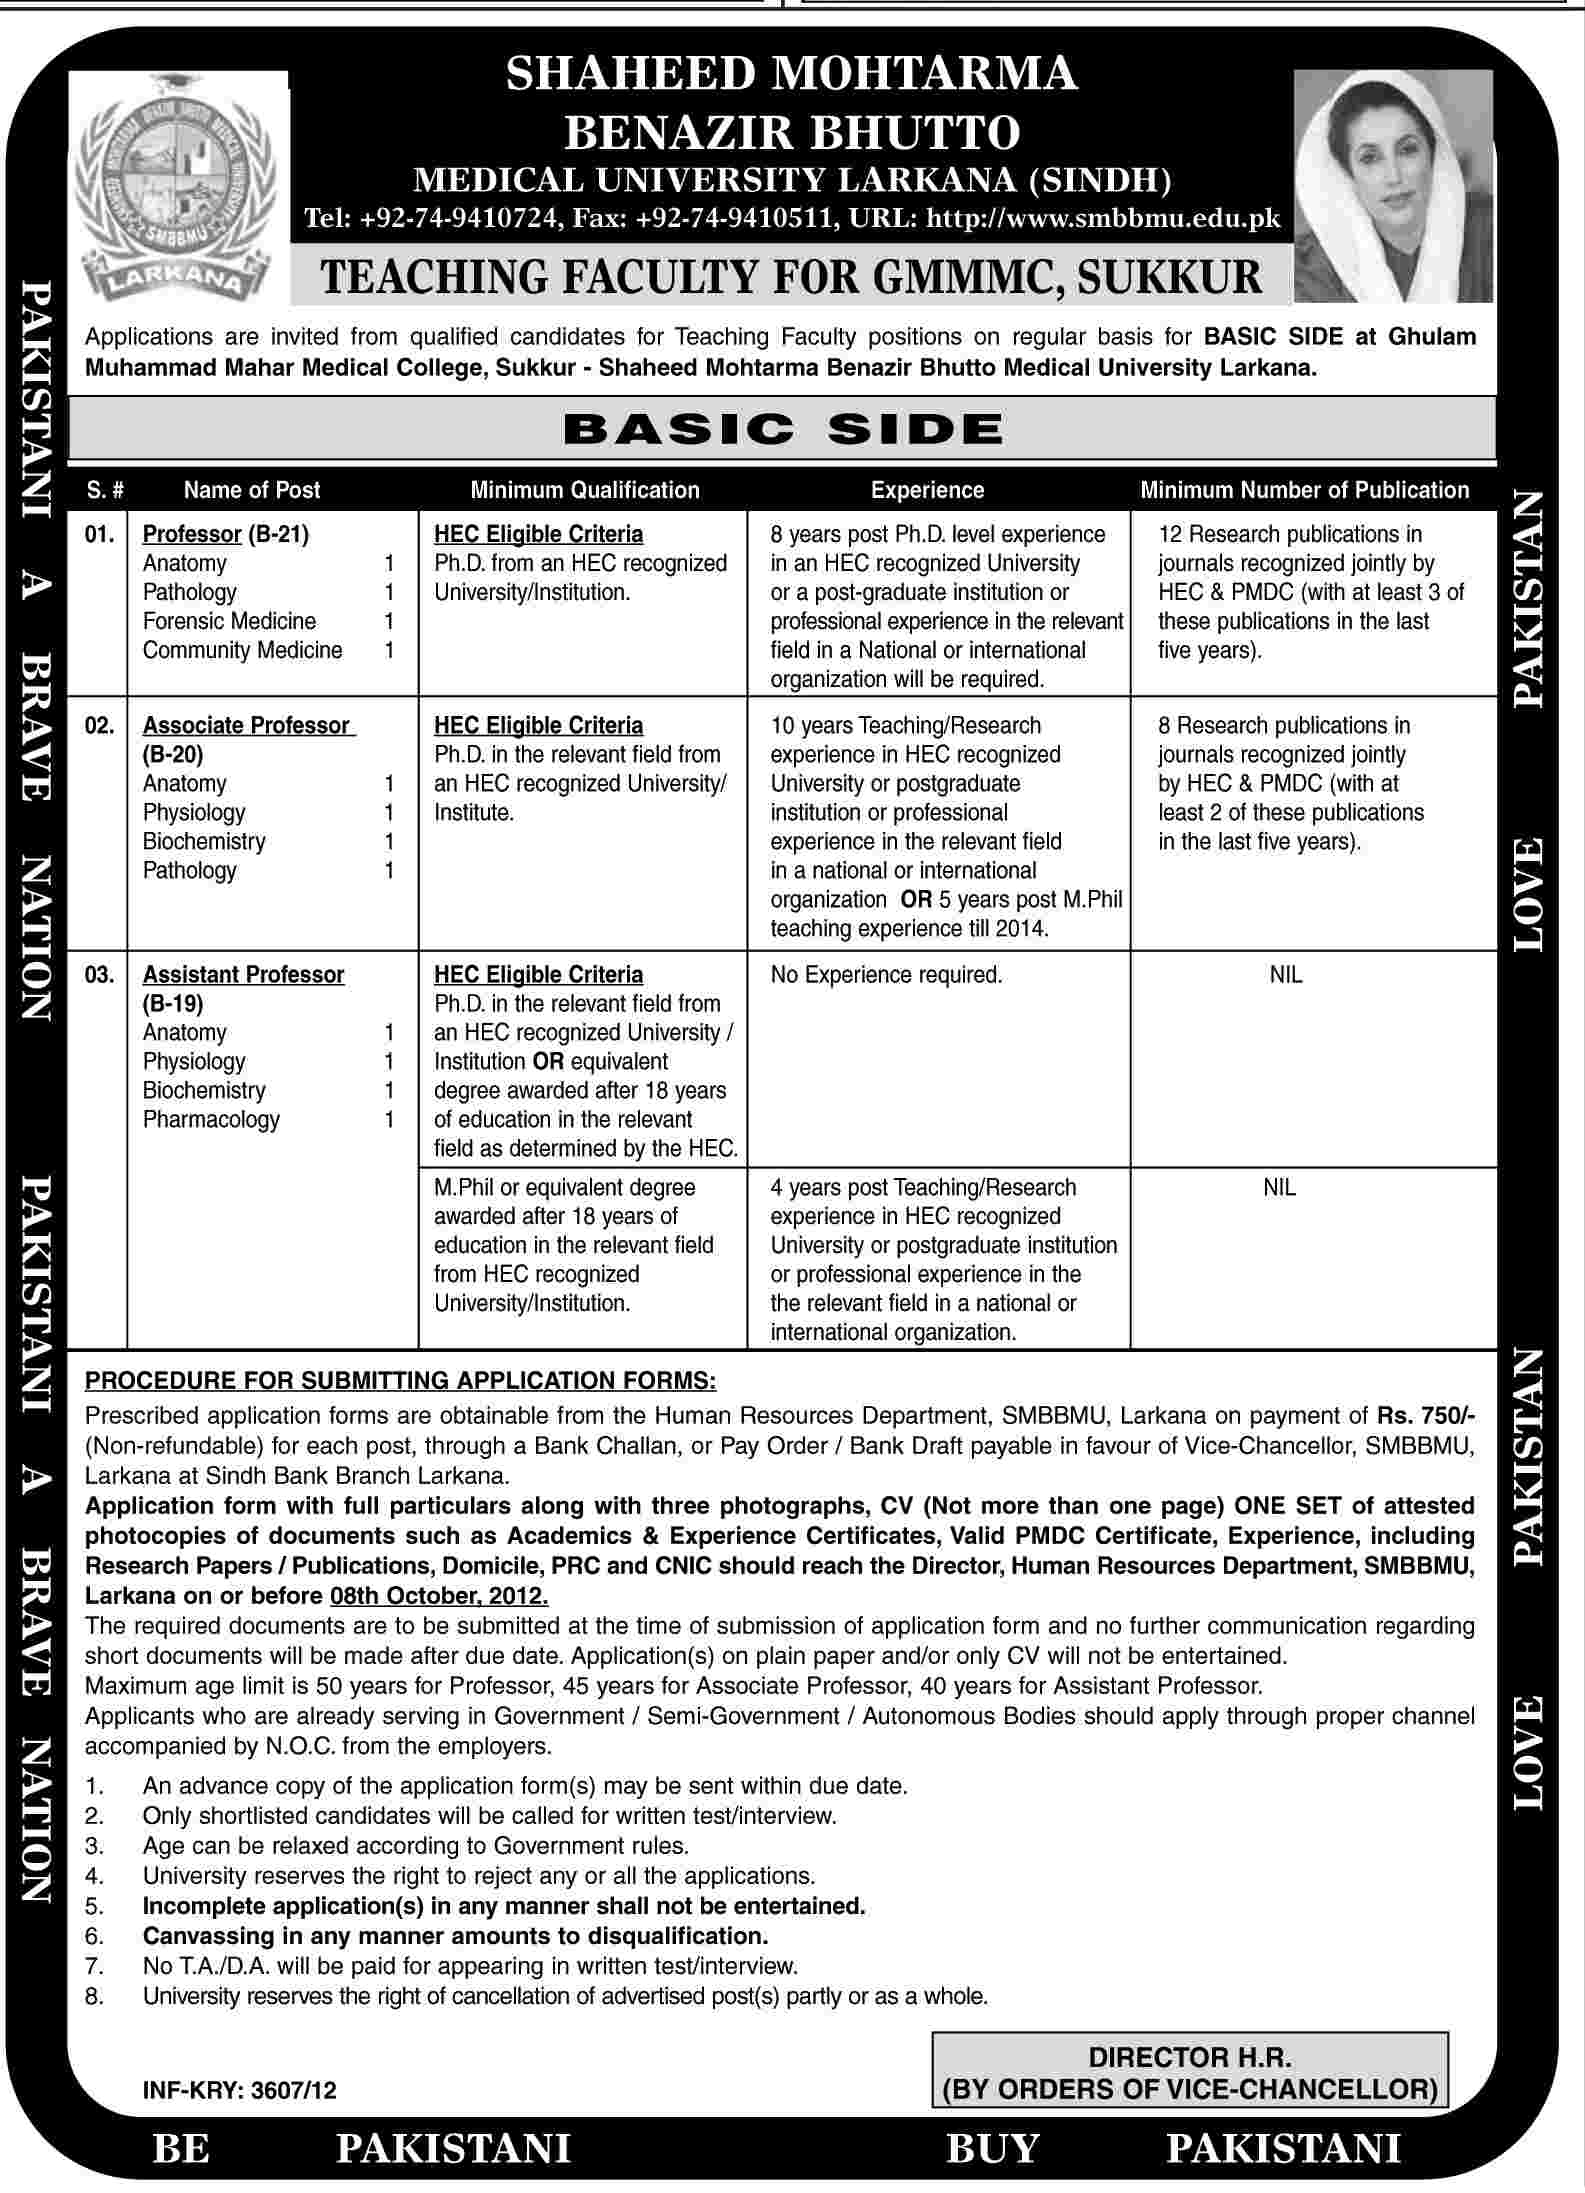 Shaheed Mohtarma Benazir Bhutto Medical University Larkana Jobs (Government Job)